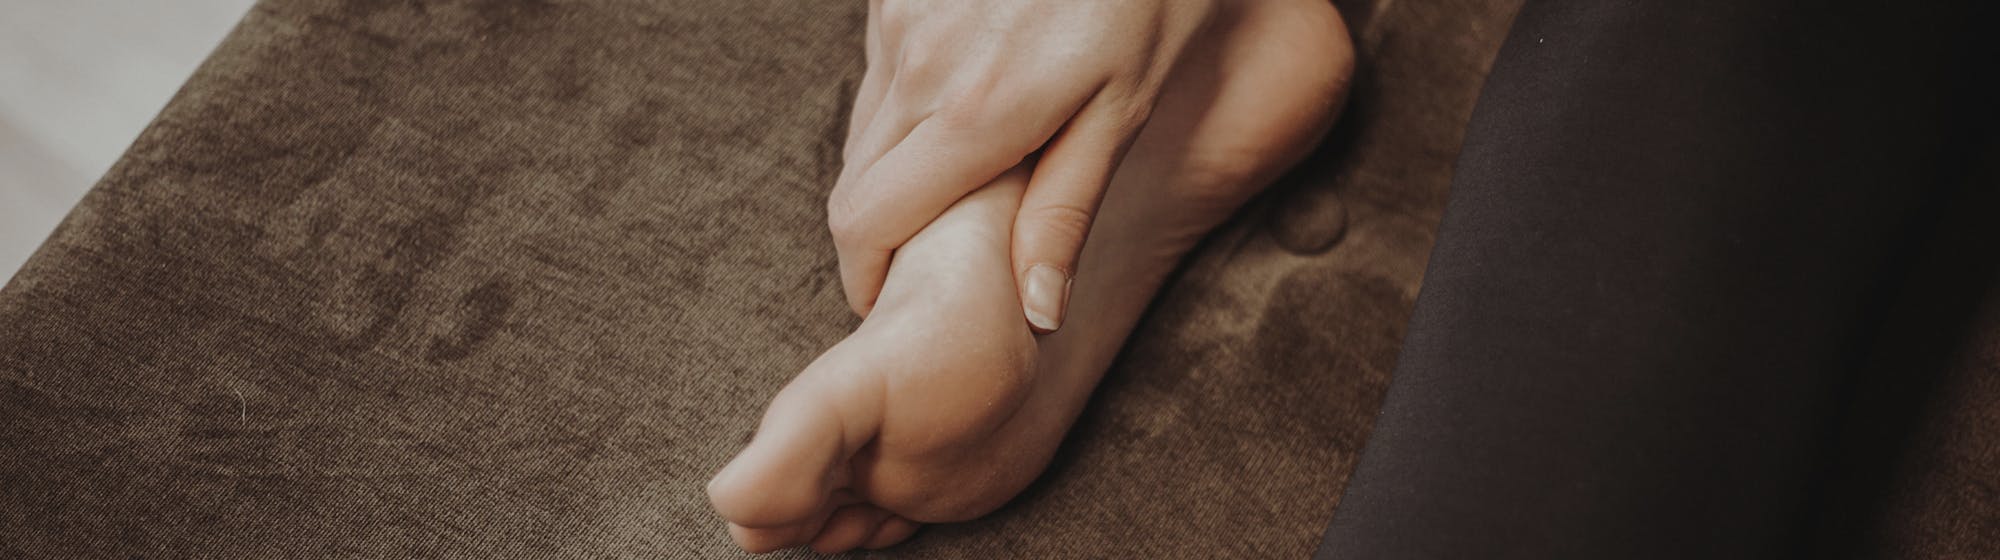 Fußschmerzen